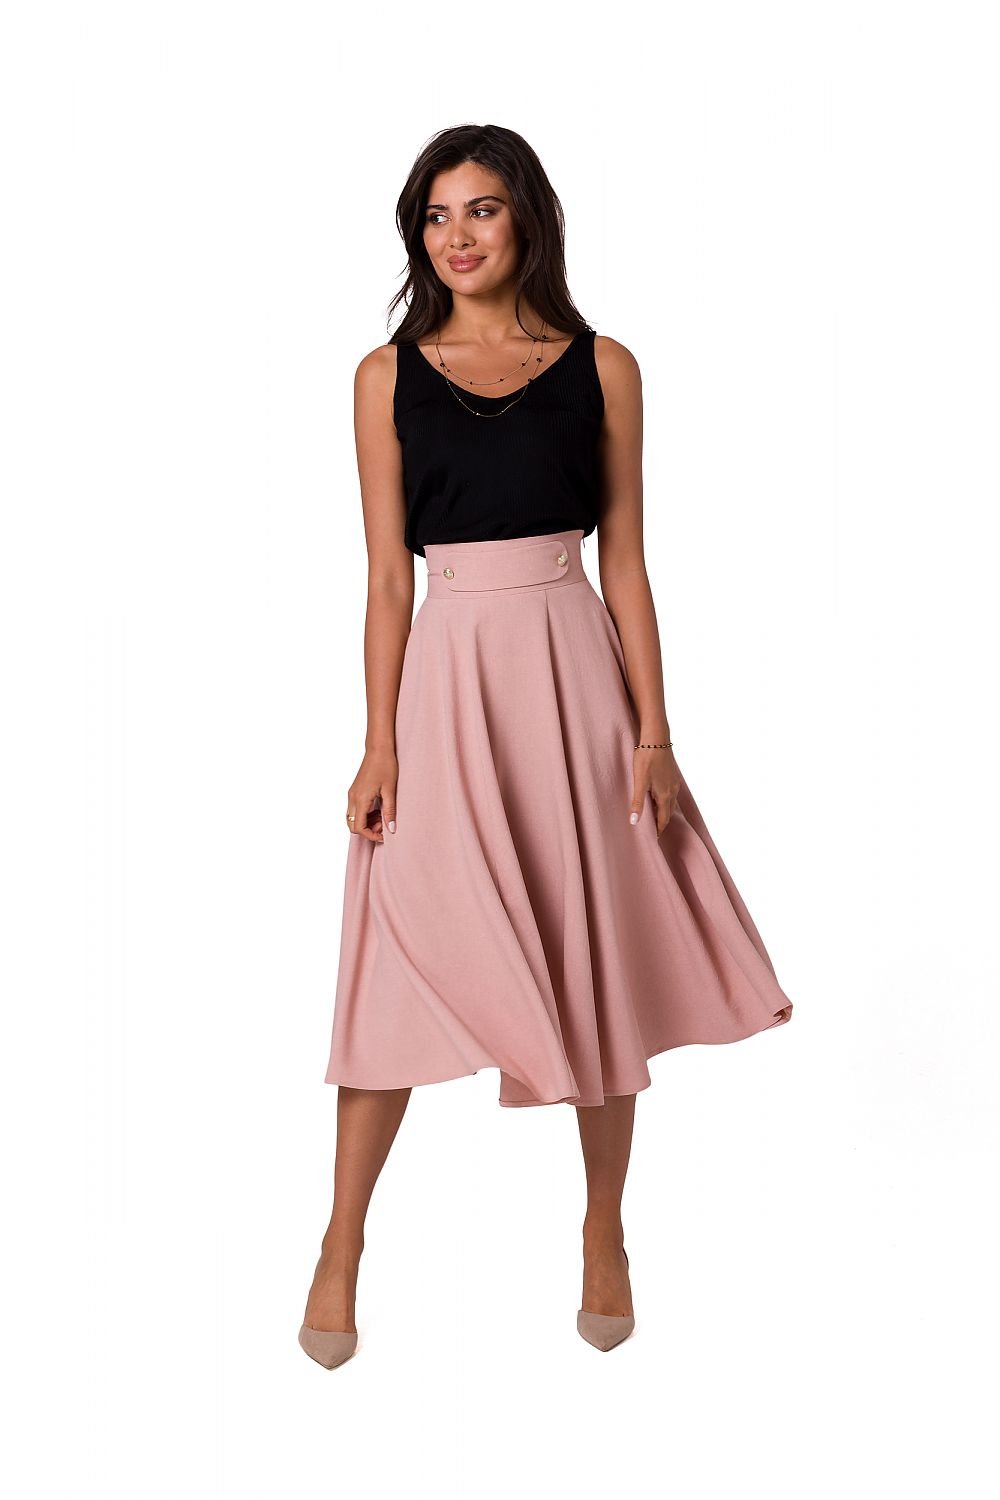 Jupe midi taille haute rose en tissu fluide avec coupe évasée et ceinture assortie, idéale pour une tenue élégante.